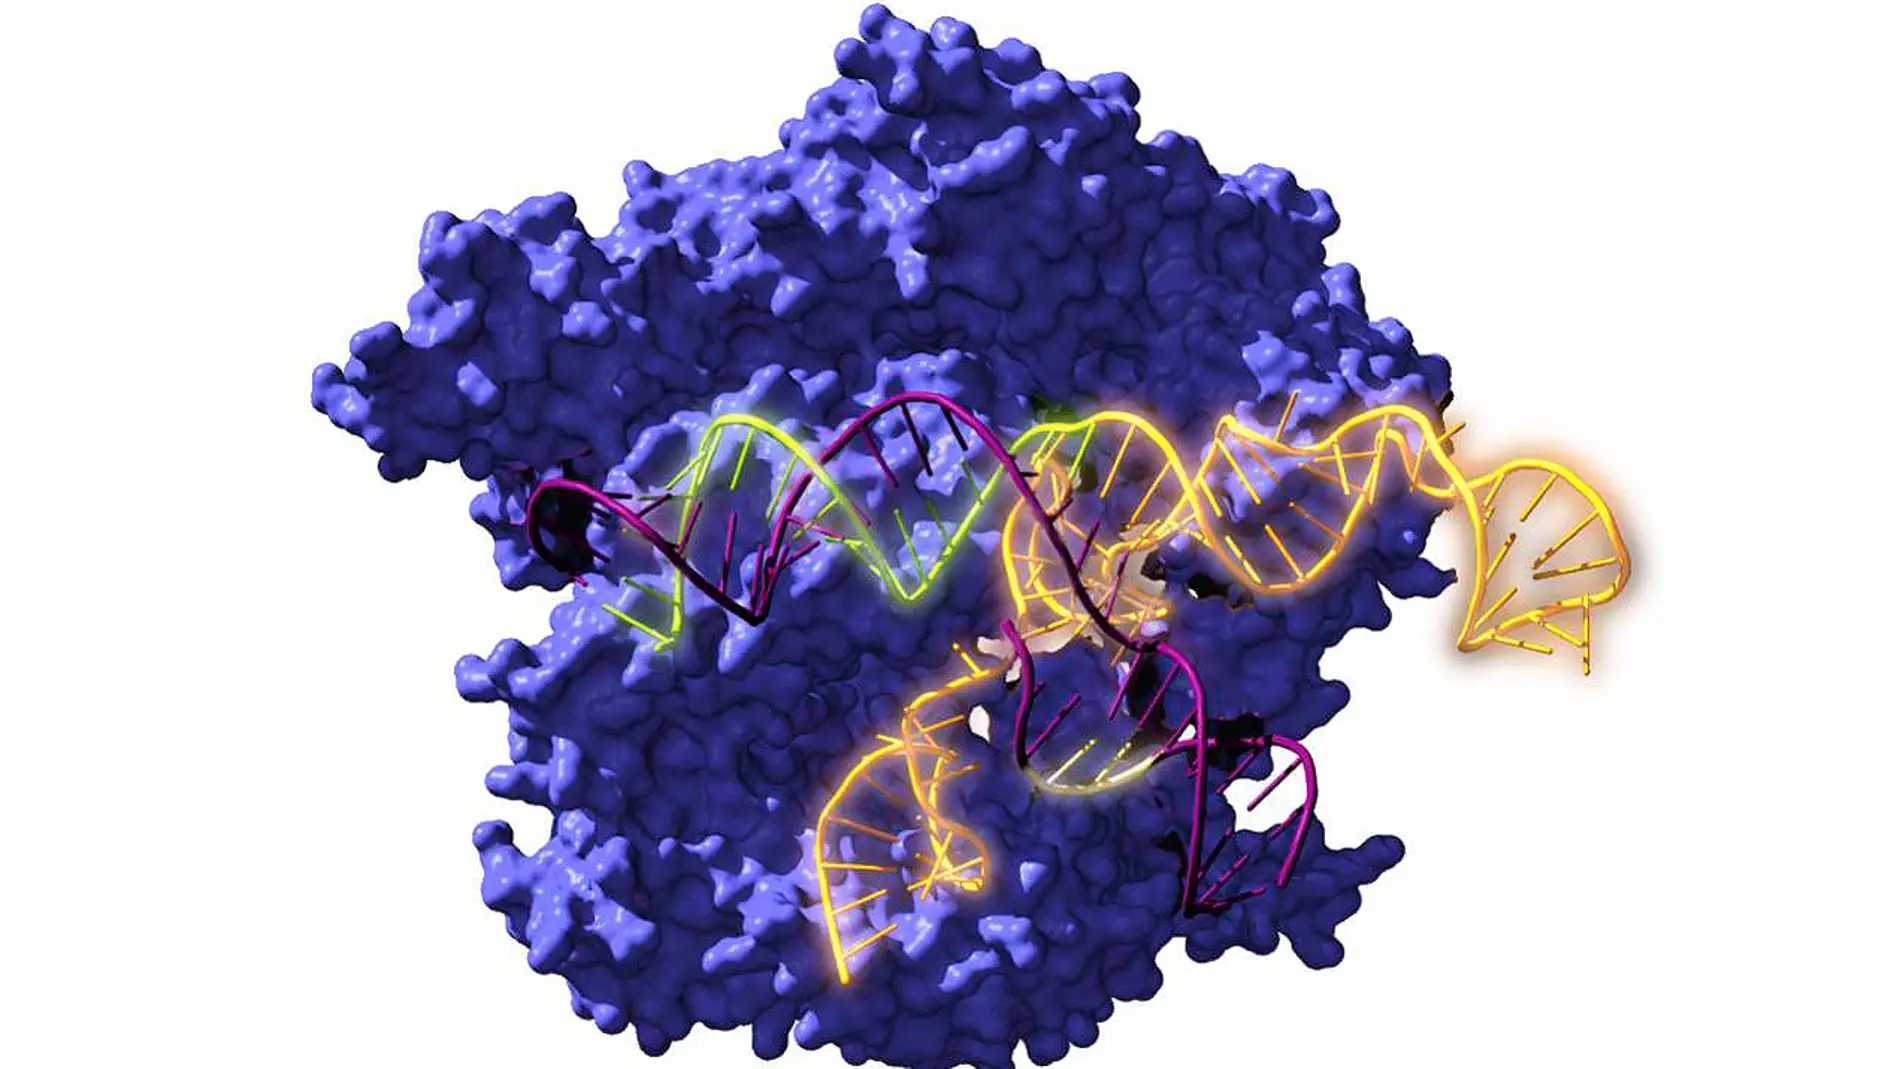 Imagen de Cas9, una enzima endonucleasa asociada con el sistema CRISPR, actuando sobre el ADN objetivo